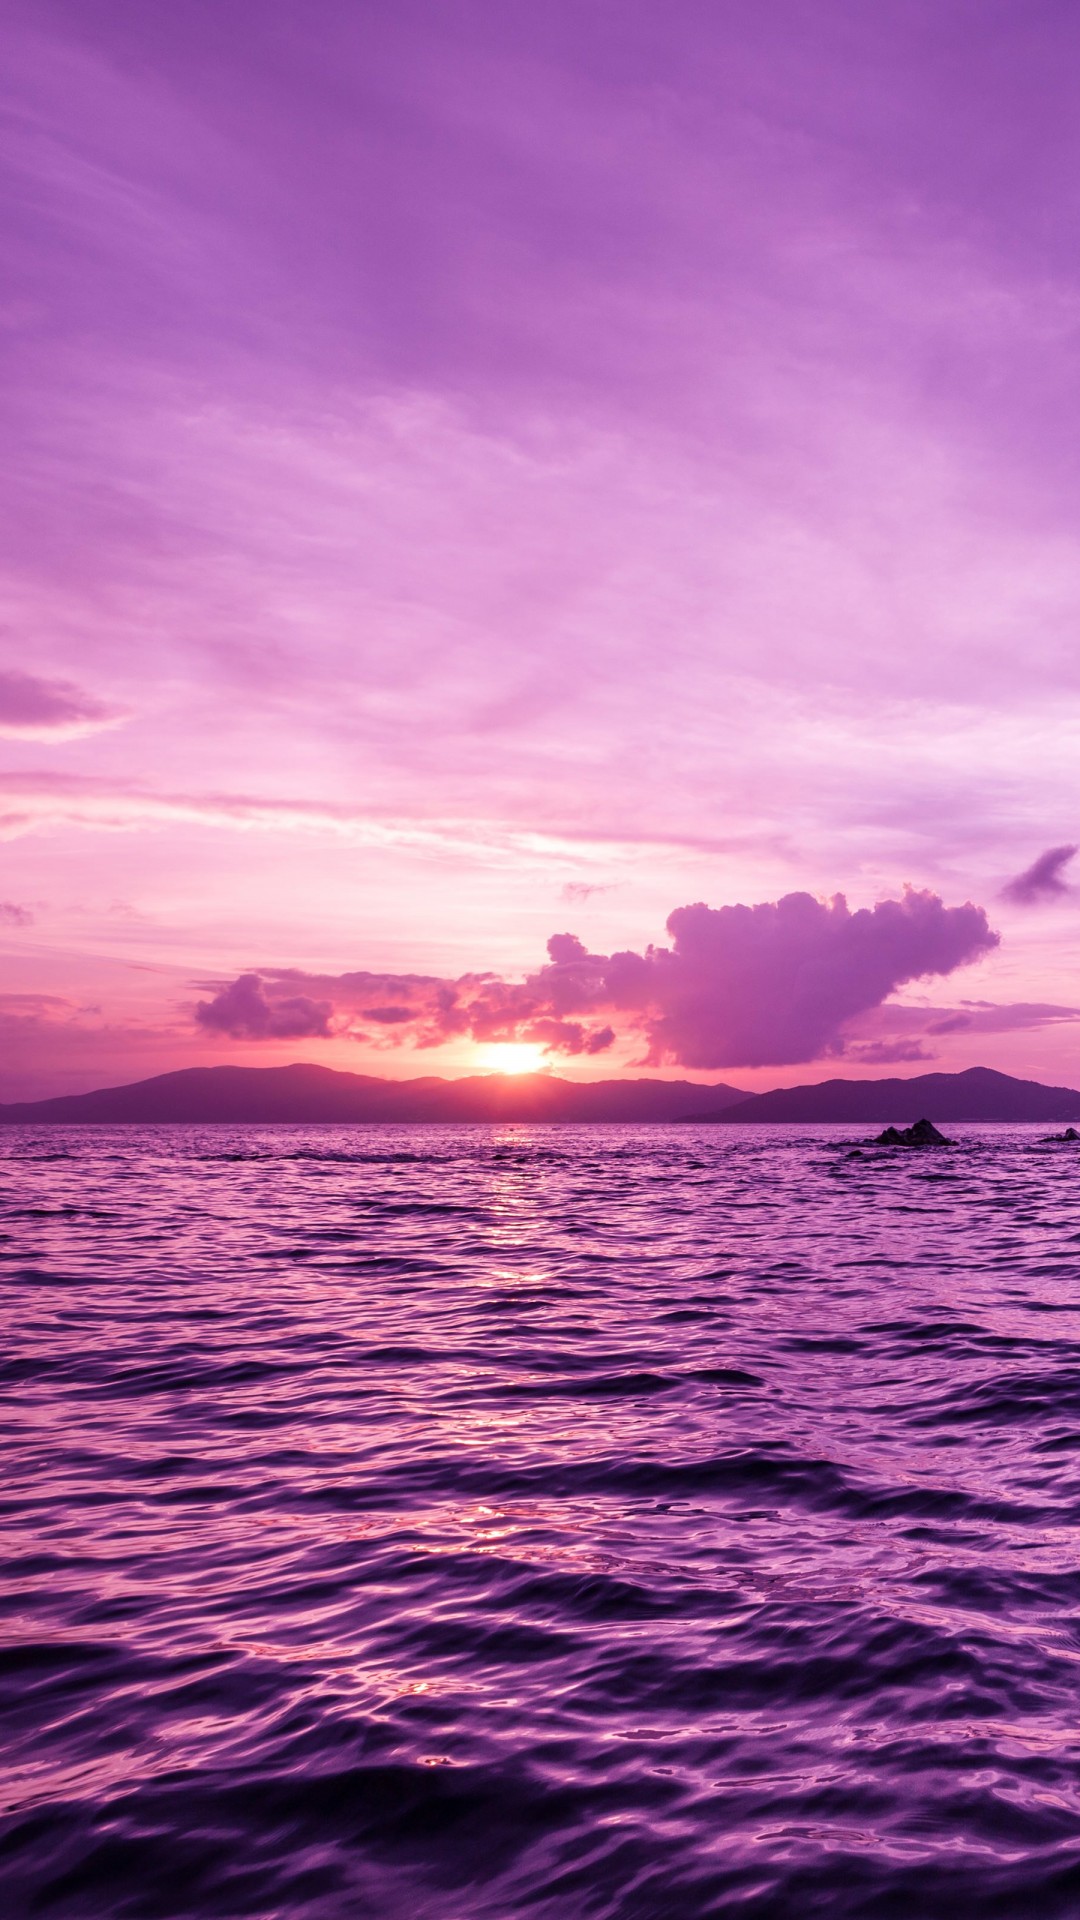 Pelican Island Sunset, British Virgin Islands Wallpaper for Google Nexus 5X